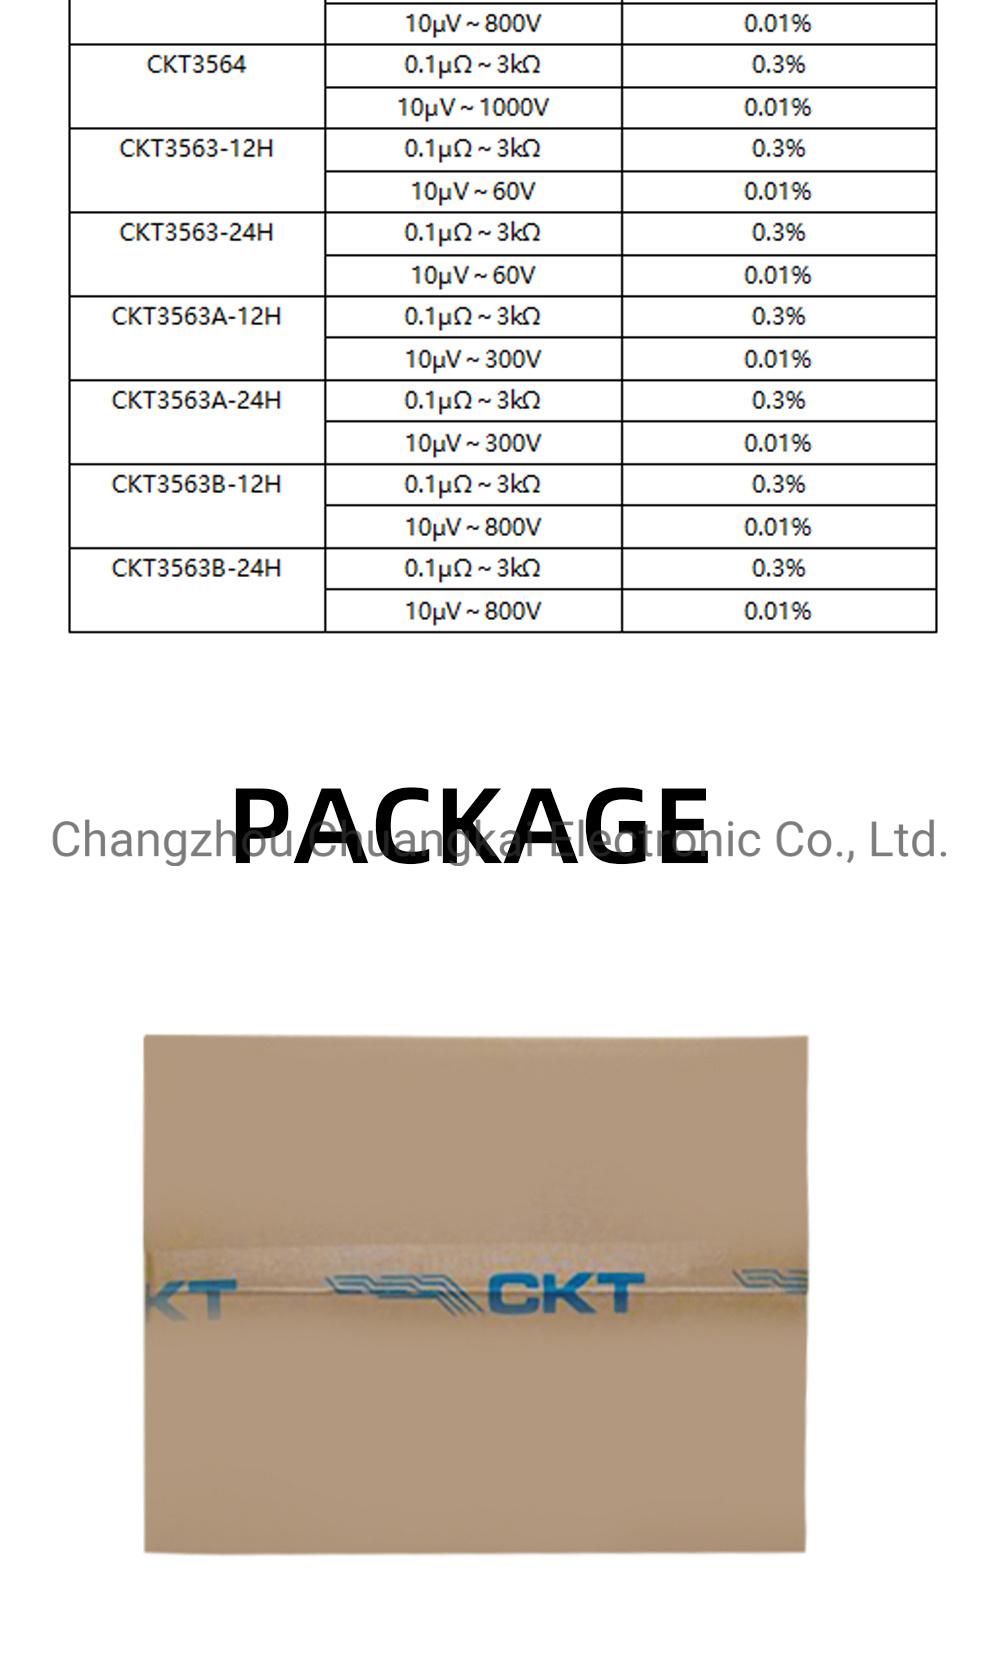 Ckt3564 Wide Measuring Range Battery Meter for Mobile Phones 200ah Battery Tester